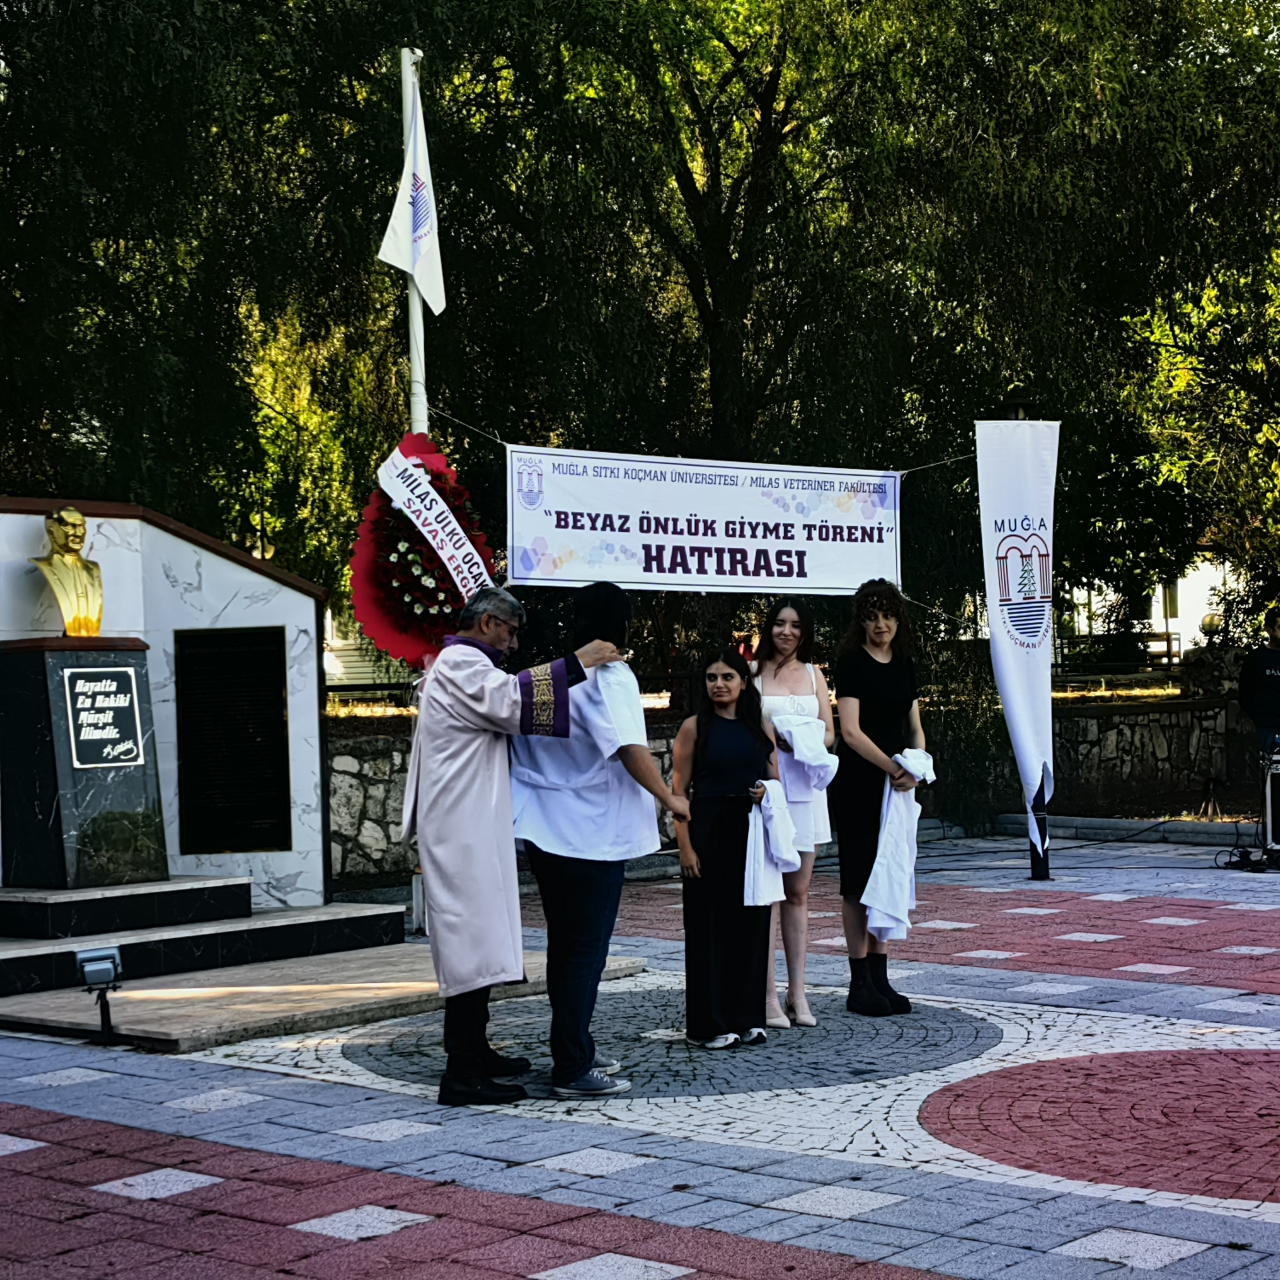 Milas Veteriner Fakültesi Beyaz Önlük Giyme, Morfoloji Binası ve Hayvan Hastanesi Geçici Hizmet Binası Açılış Töreni Gerçekleştirildi